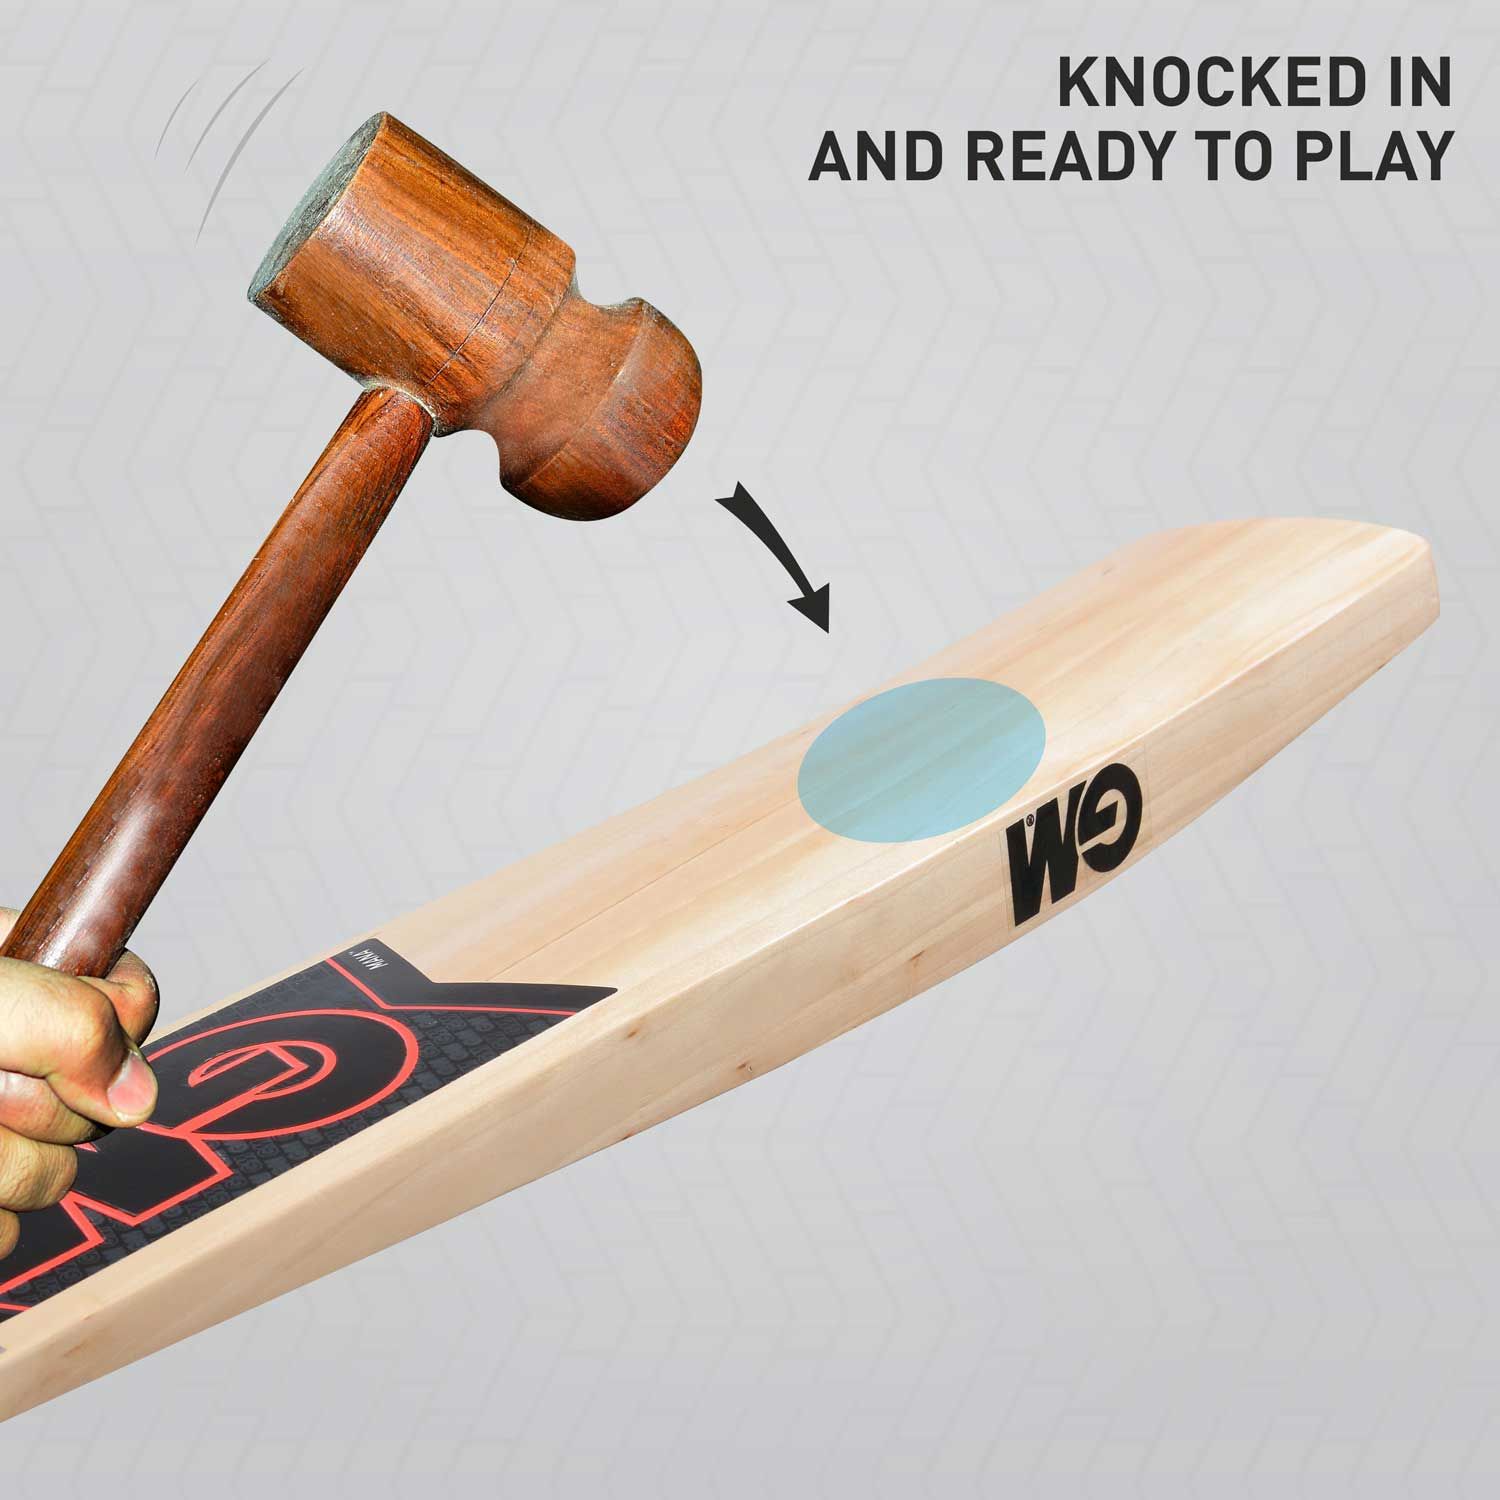 Mana Superstar Kashmir Willow Cricket Bat